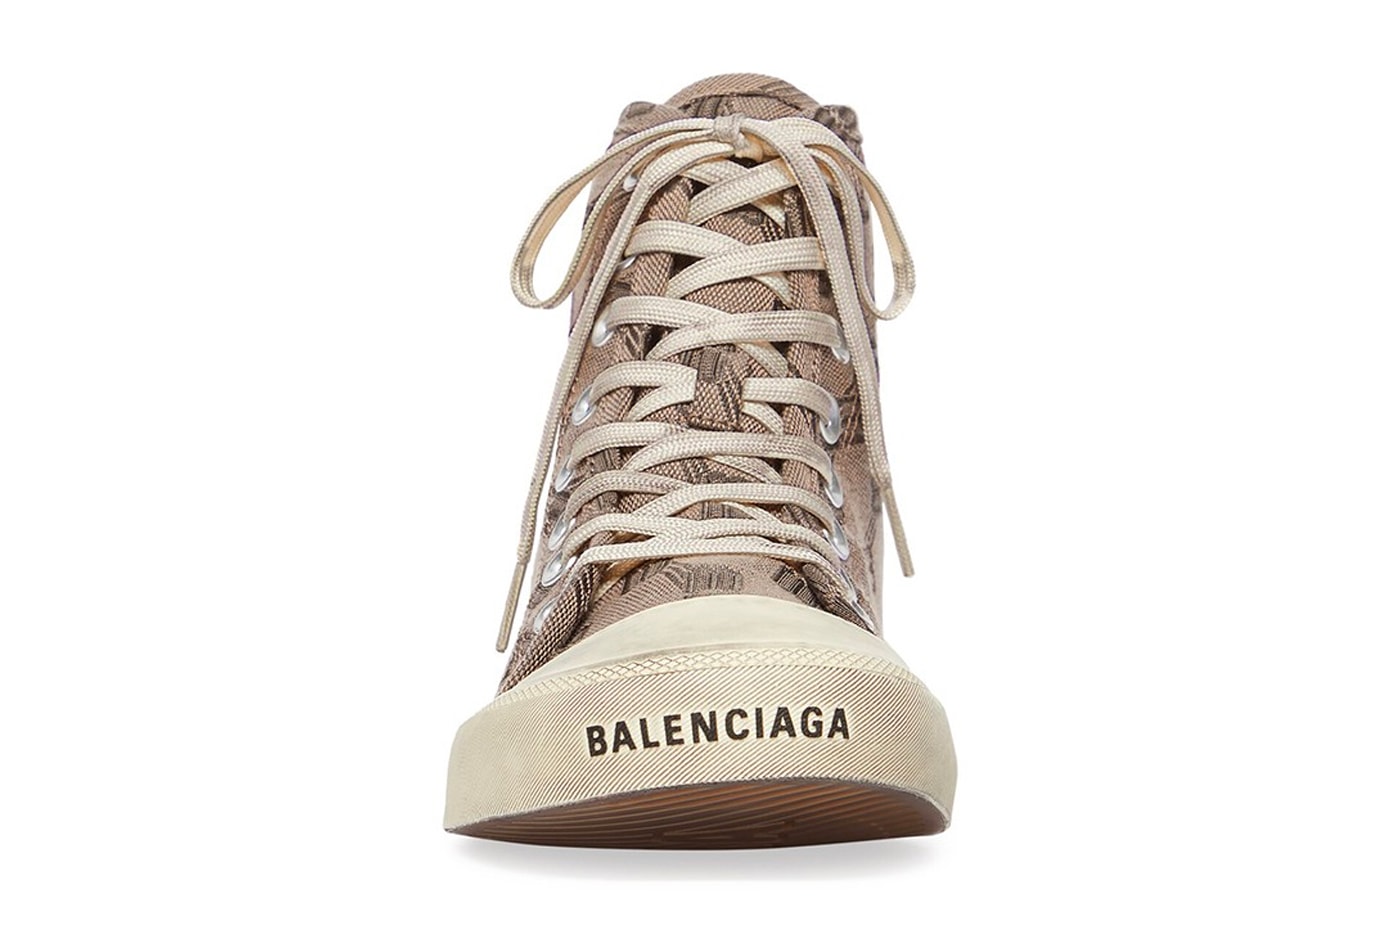 BALENCIAGA, NEW ARRIVALS, DERODELOPER.COM The Balenciaga arena high top  sneakers for the fall / wint…